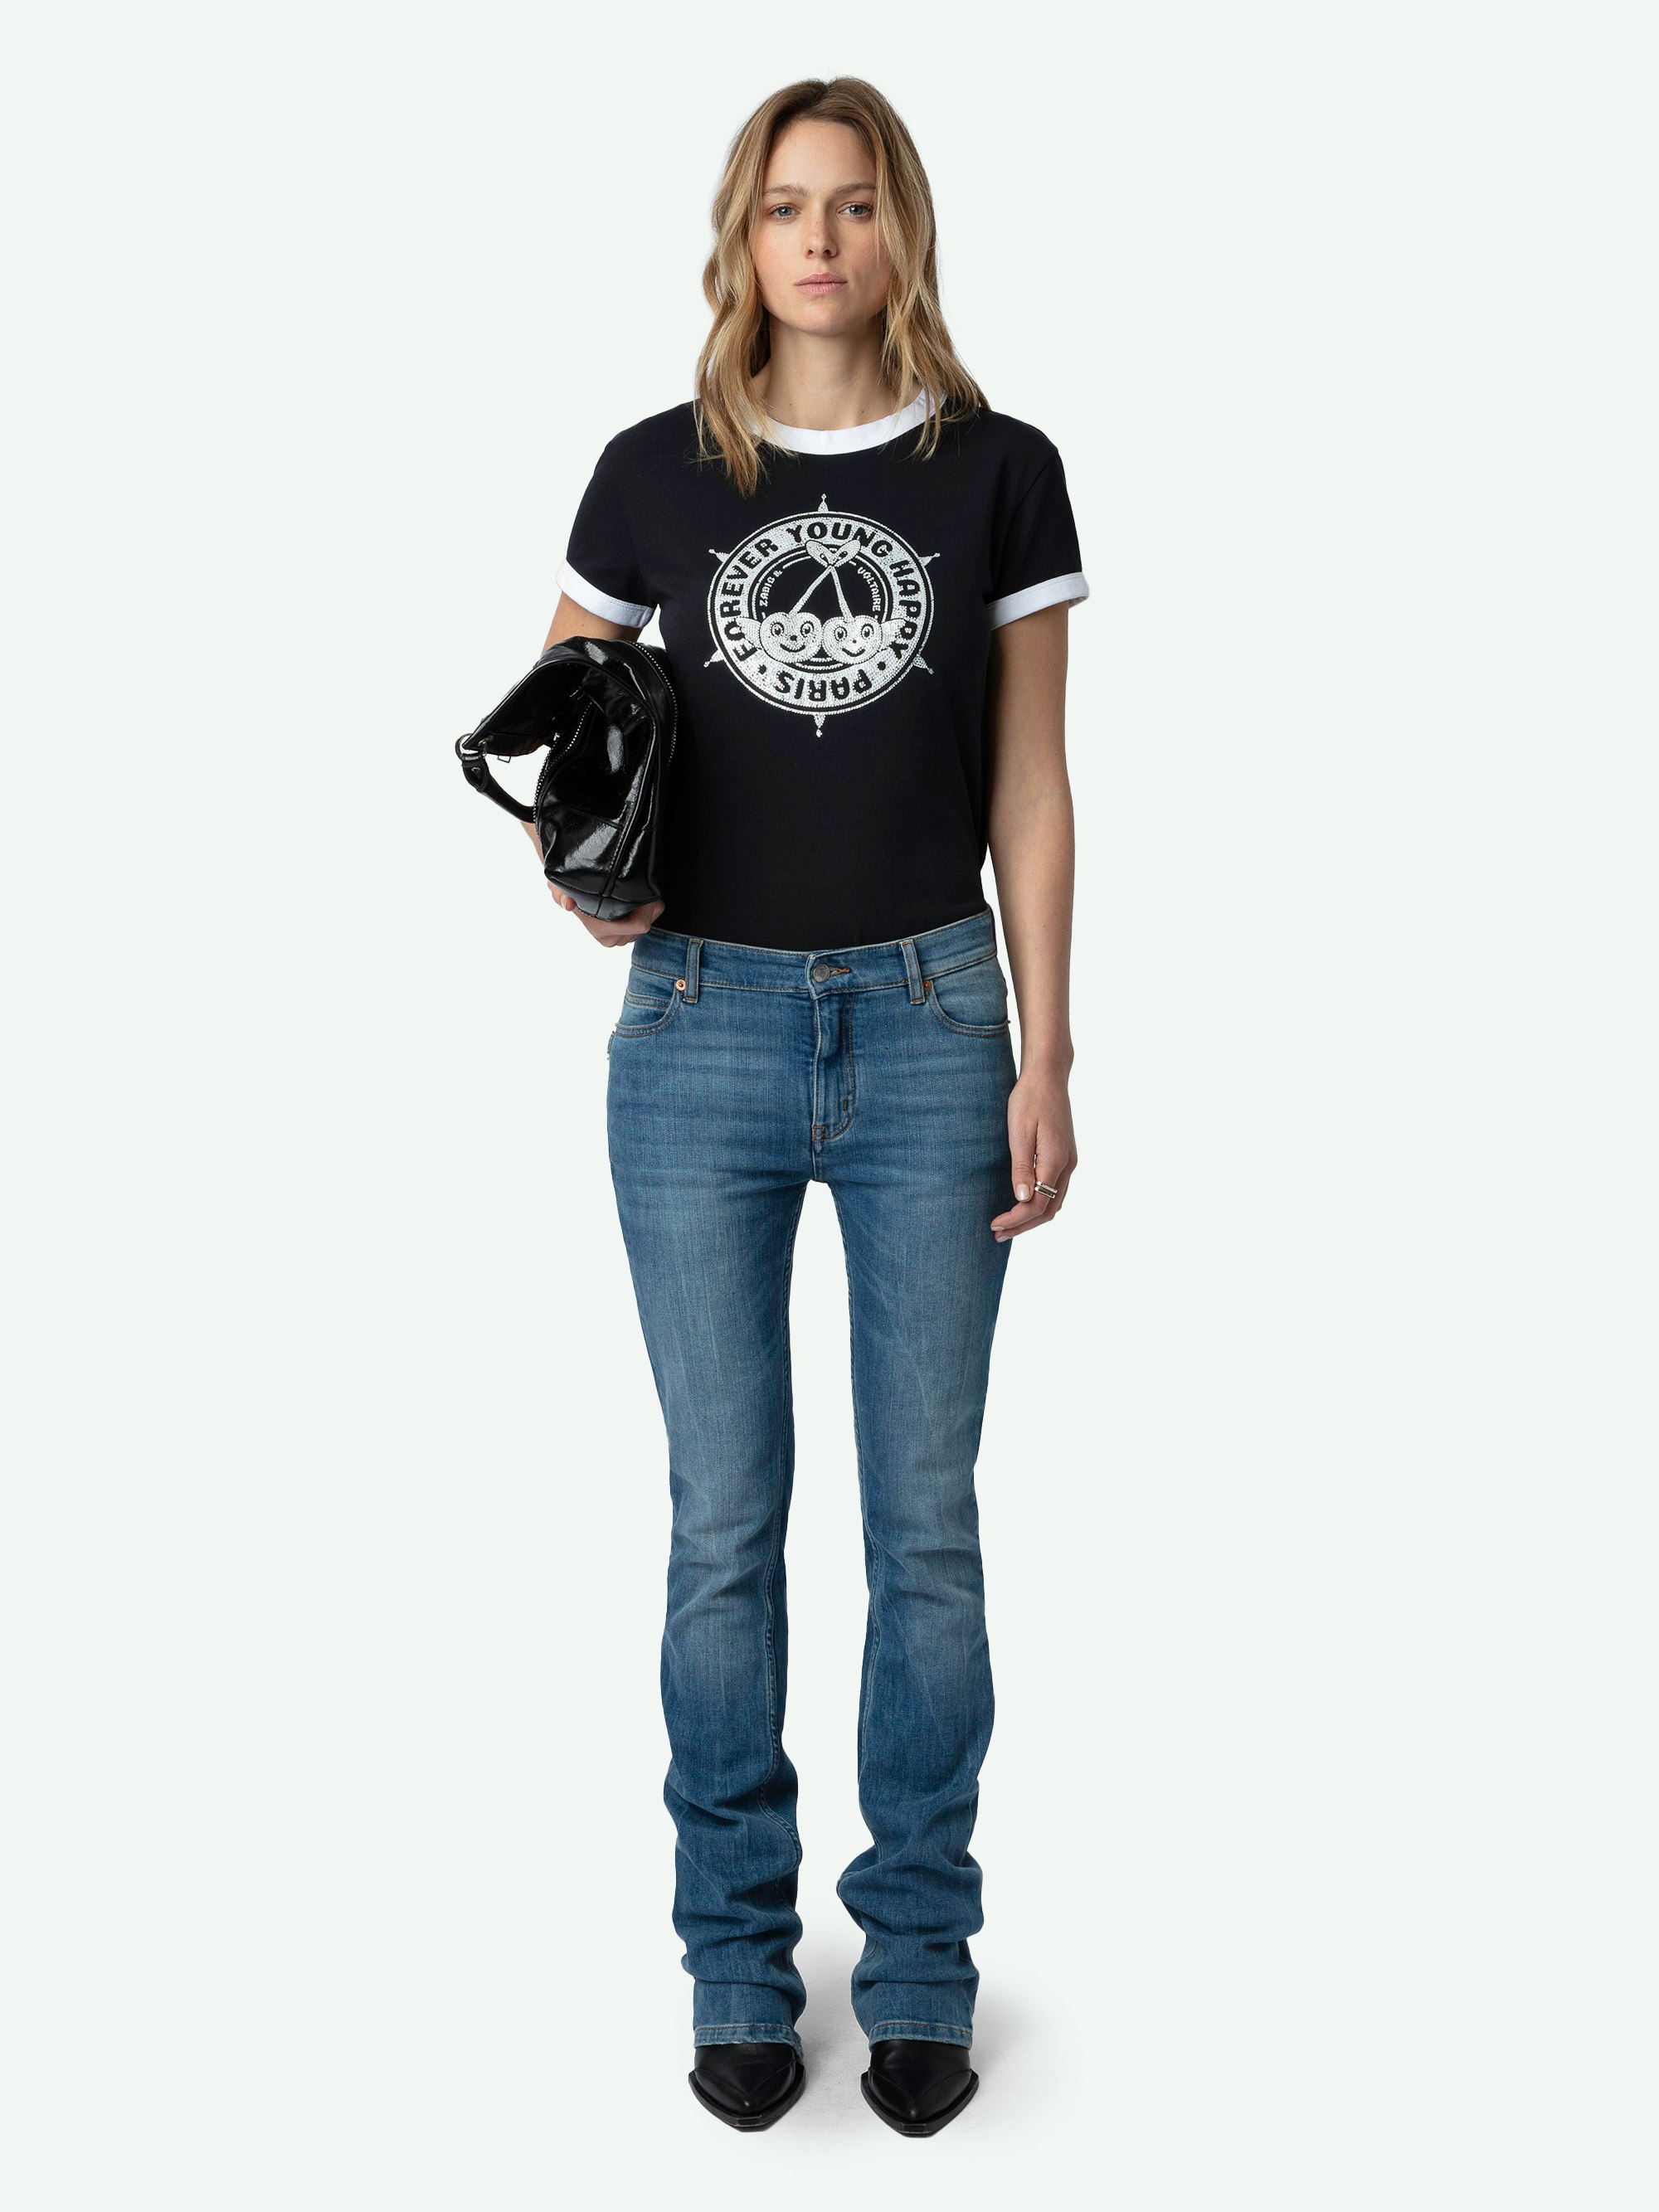 T-shirt Walk Stemma Strass - T-shirt in cotone biologico nera con maniche corte e stampe di stemmi e ciliegie decorate con strass sul davanti.